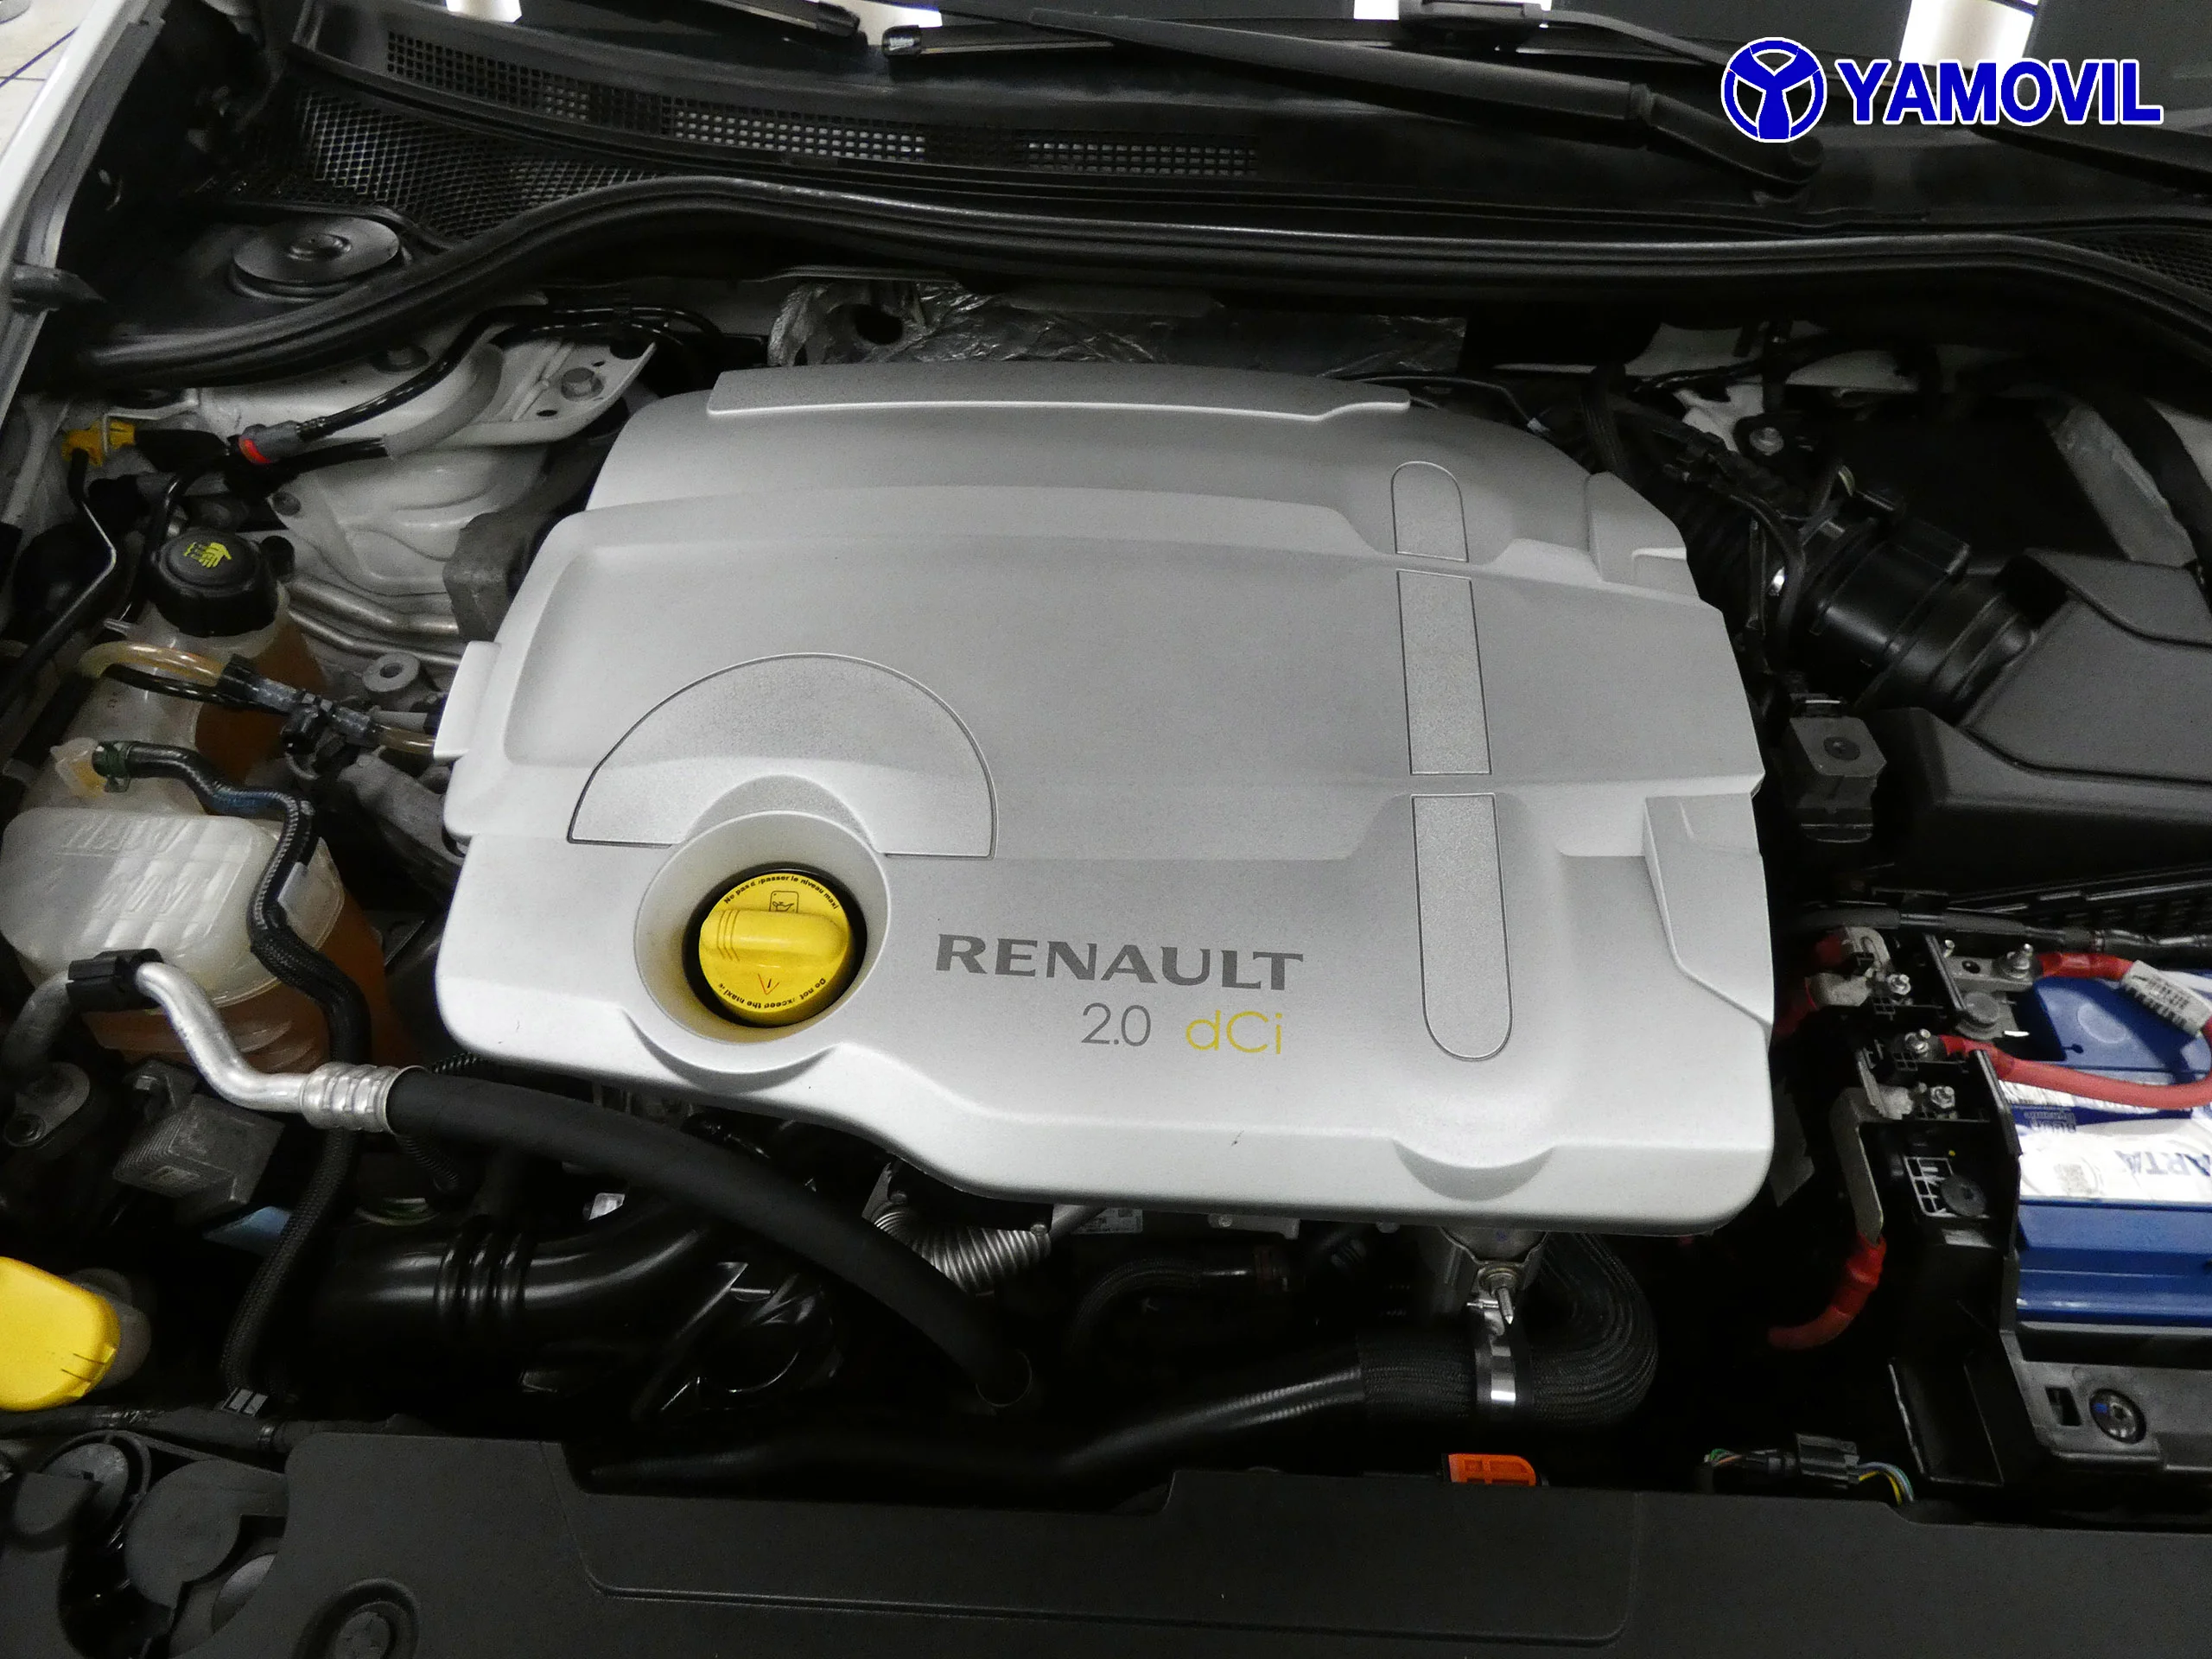 Renault Laguna 2.0 DCI EMOTION PLUS 2P - Foto 8